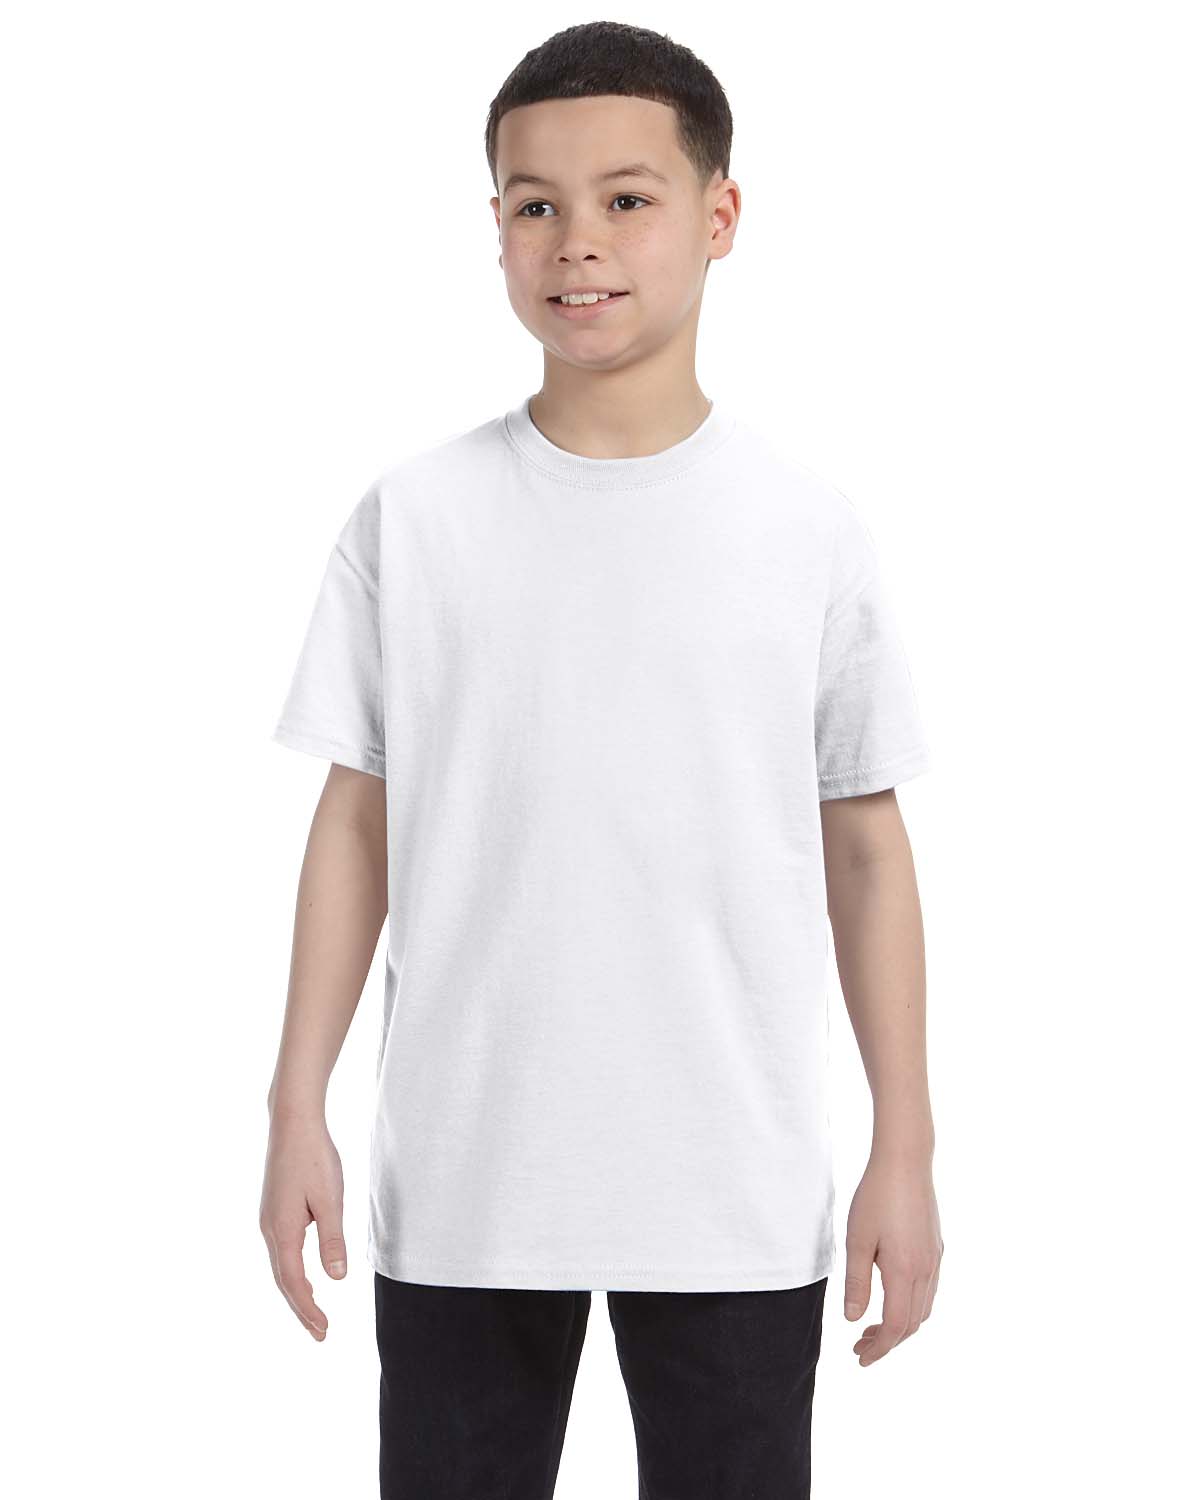 Hanes 5250 Tagless Cotton T-Shirt - Clean Mint - L